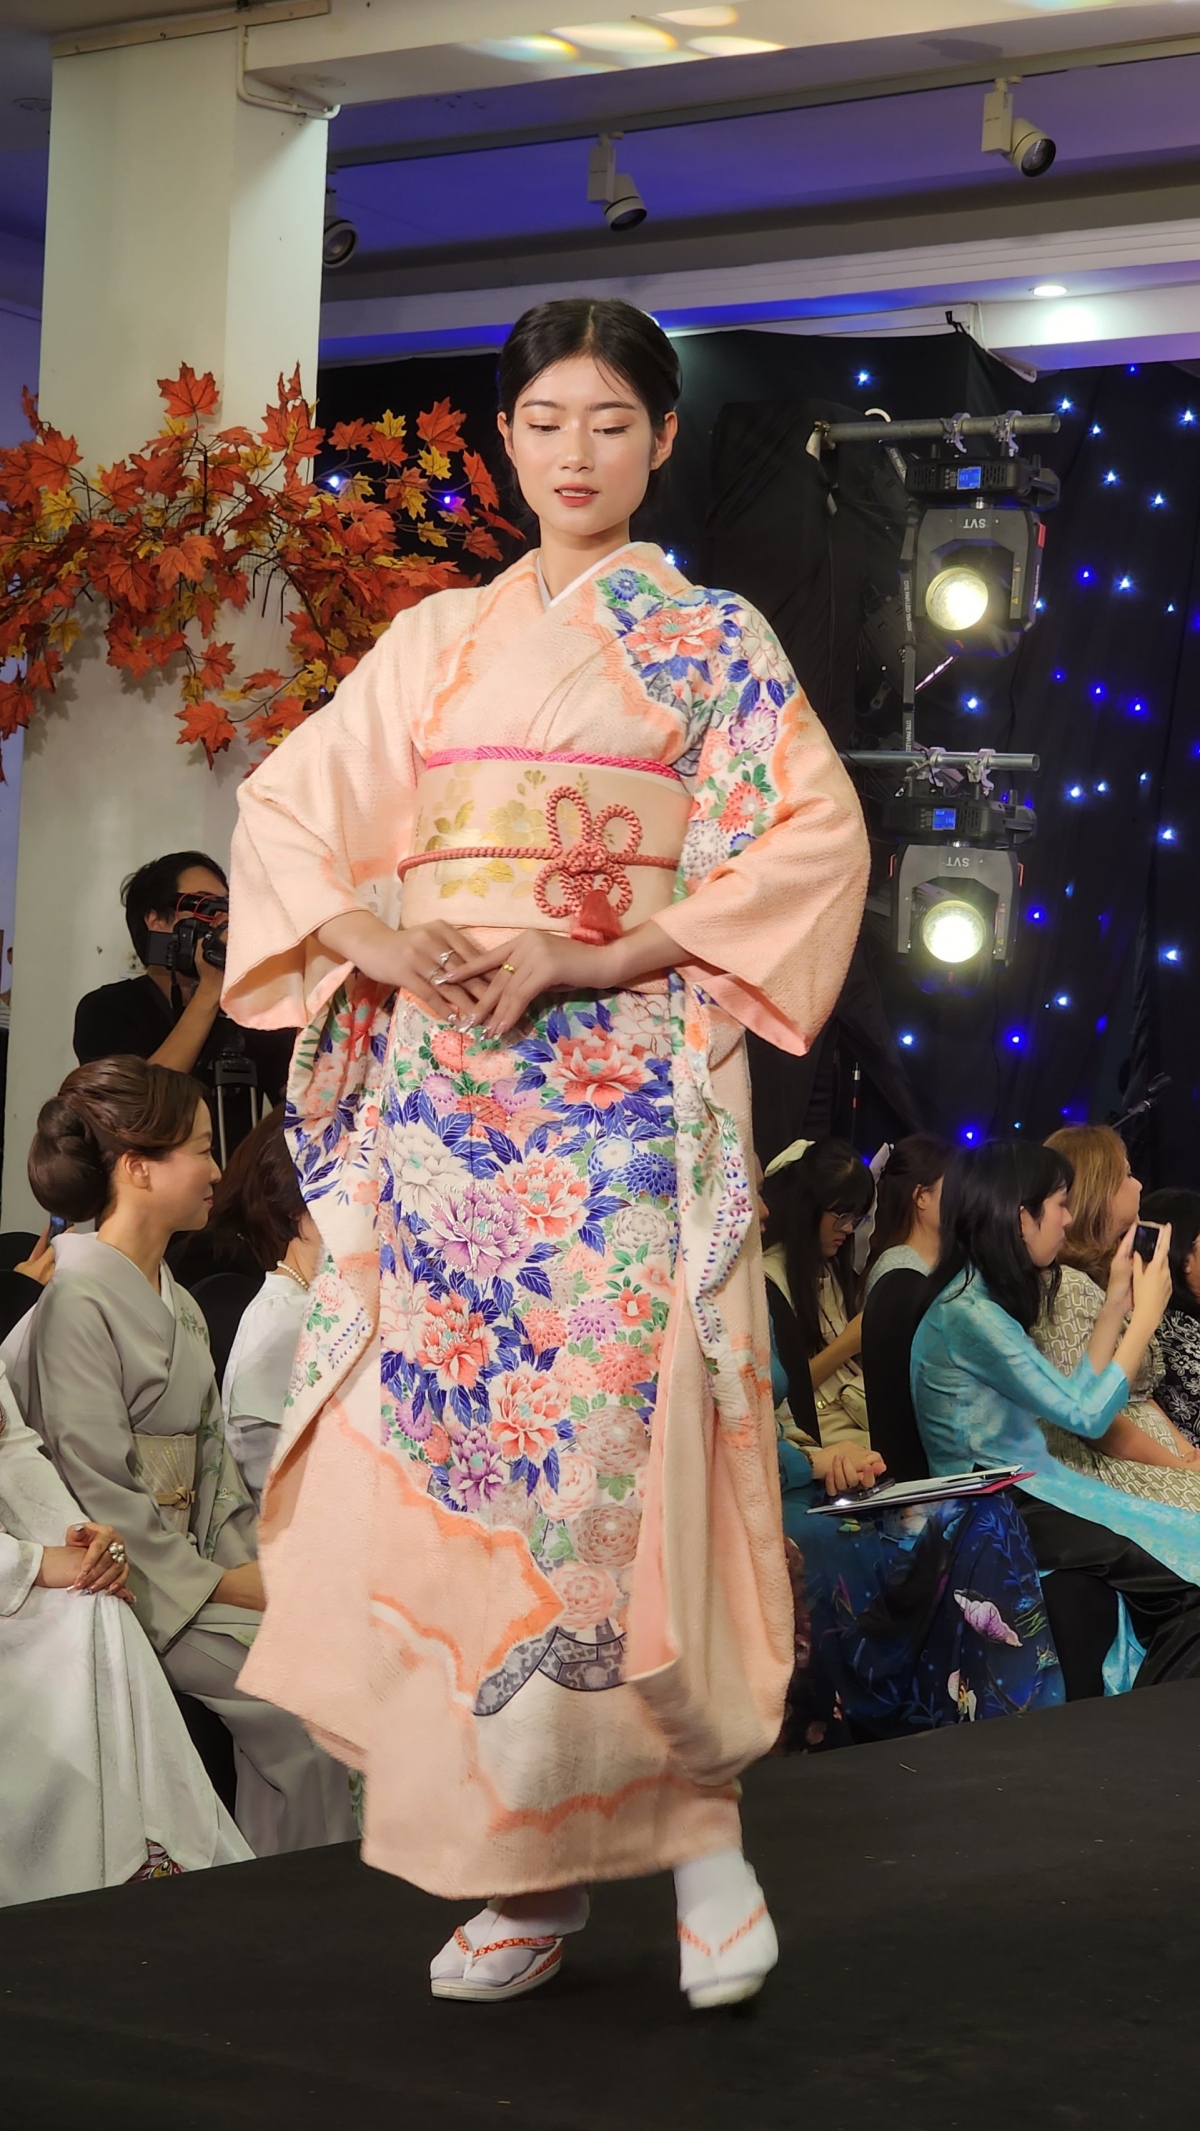 kimono-ao dai fashion show highlights vietnam-japan friendship picture 5